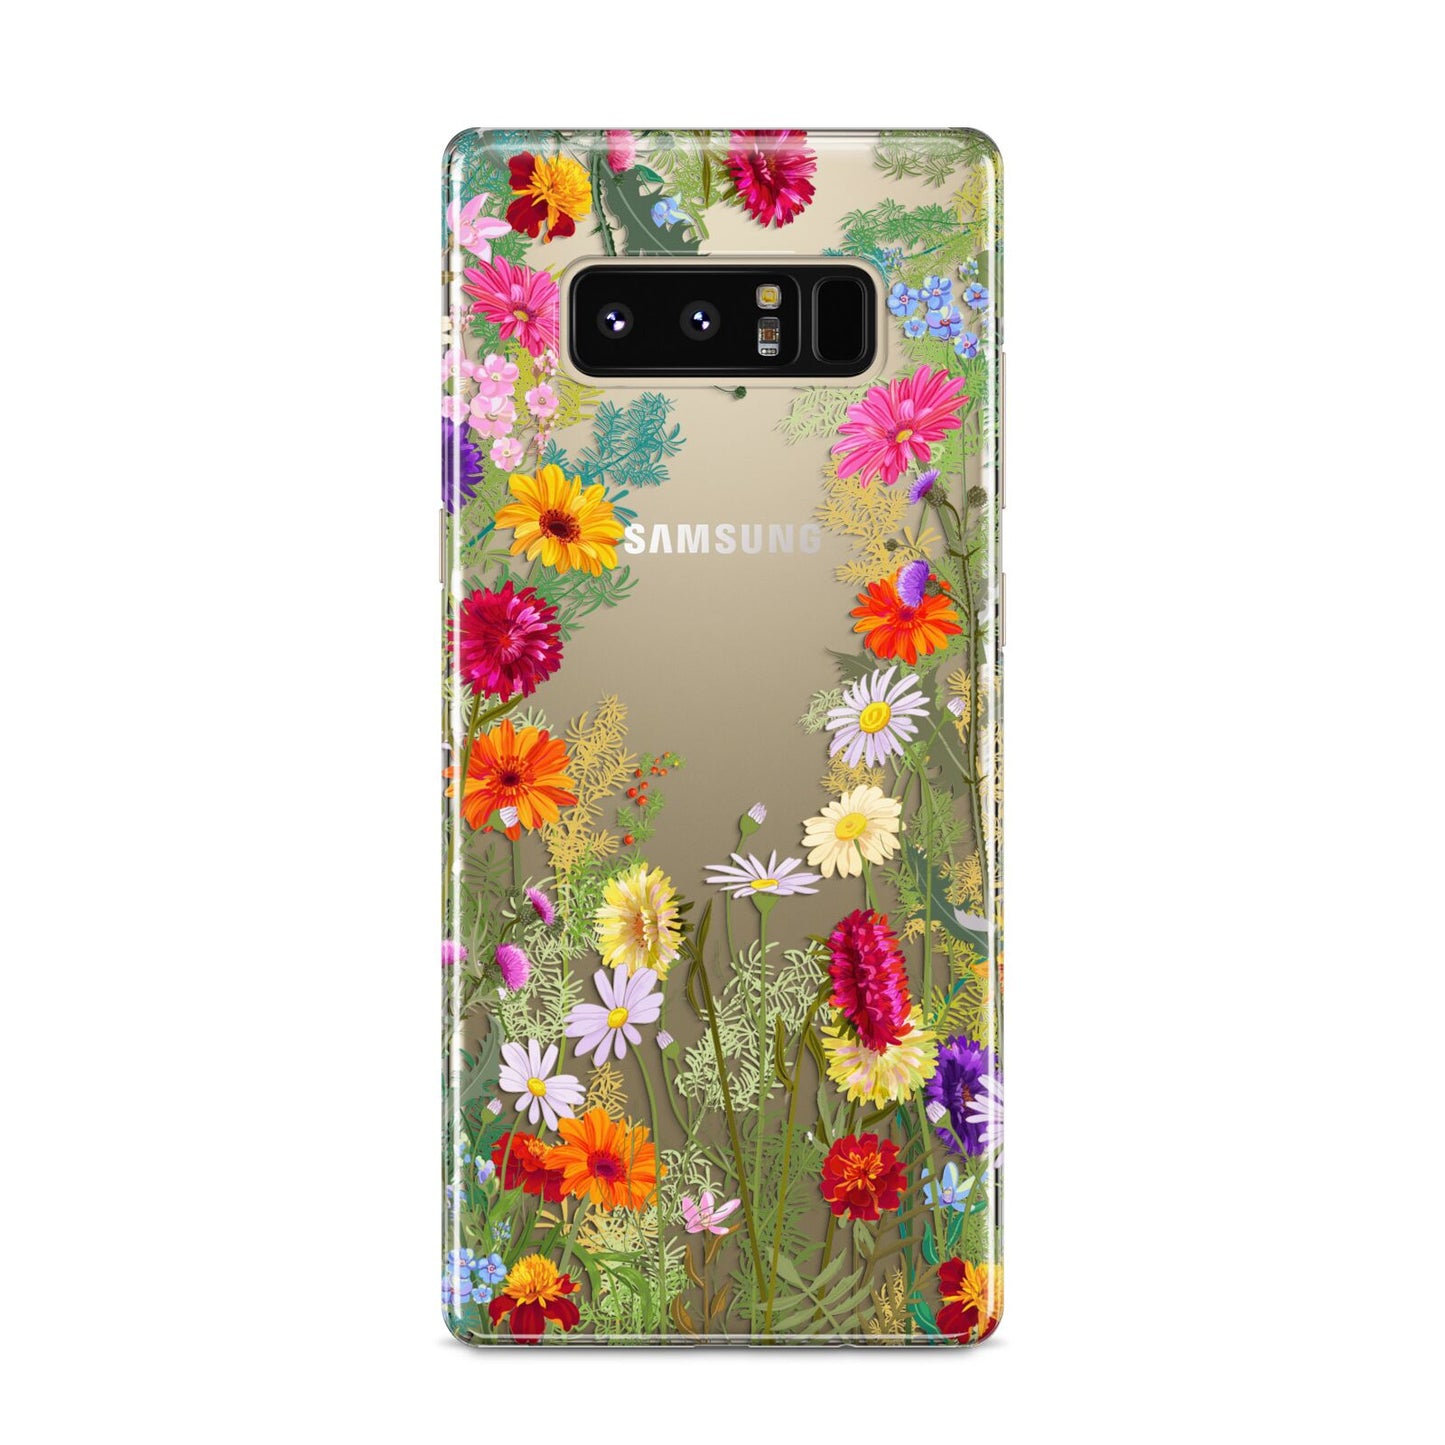 Wildflower Samsung Galaxy S8 Case